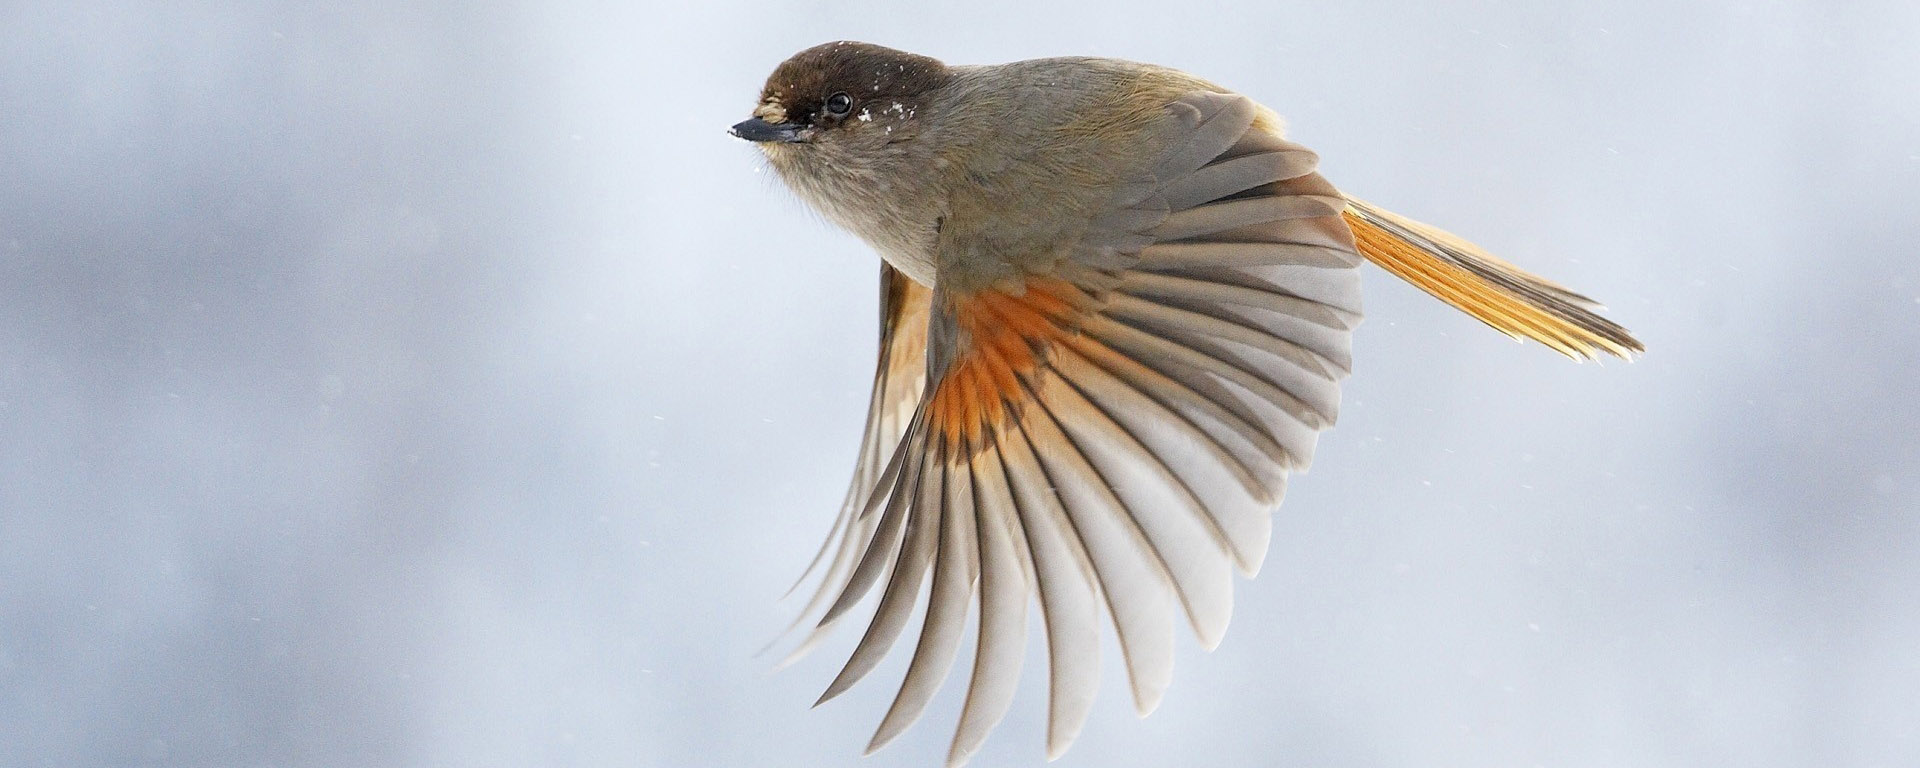 Ученые создали симуляцию, позволяющую увидеть мир глазами птиц